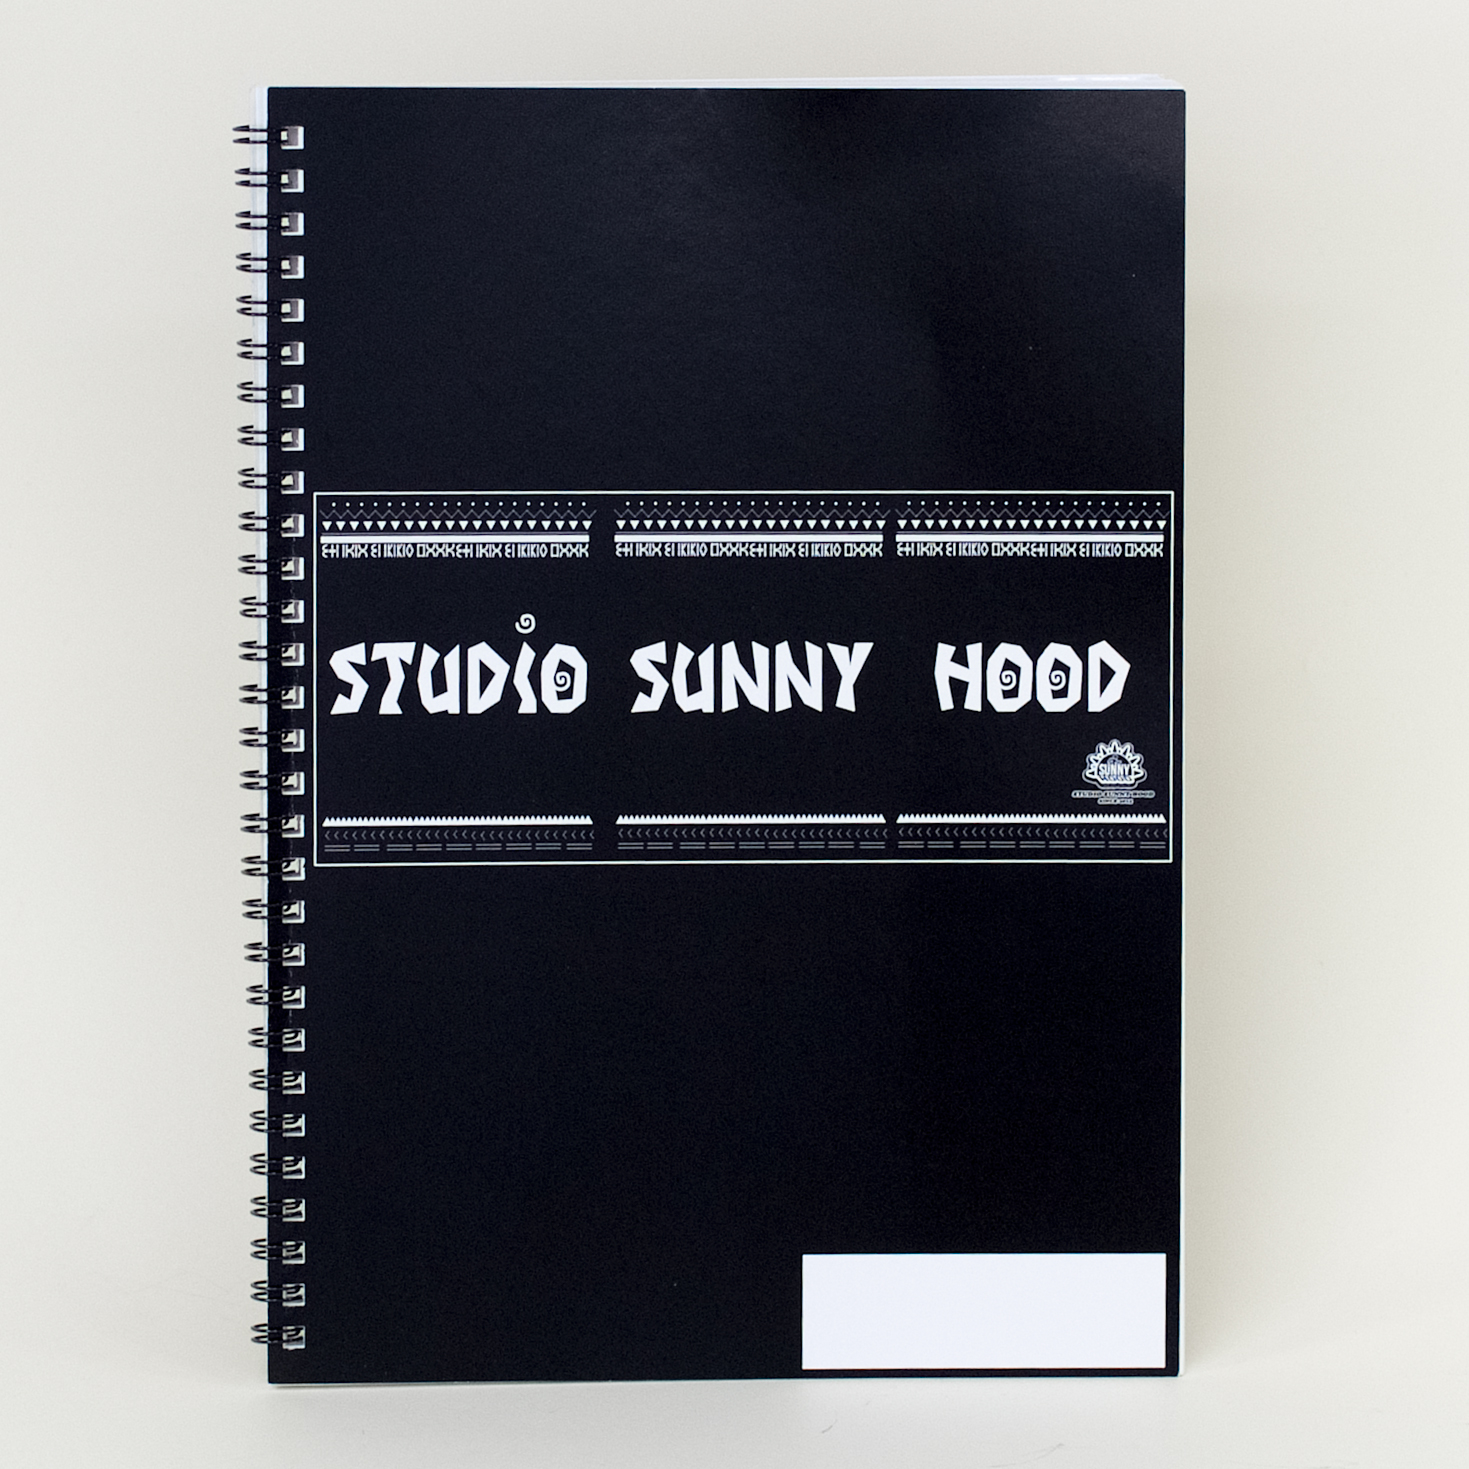 「株式会社SUNNY HOOD 様」製作のオリジナルノート